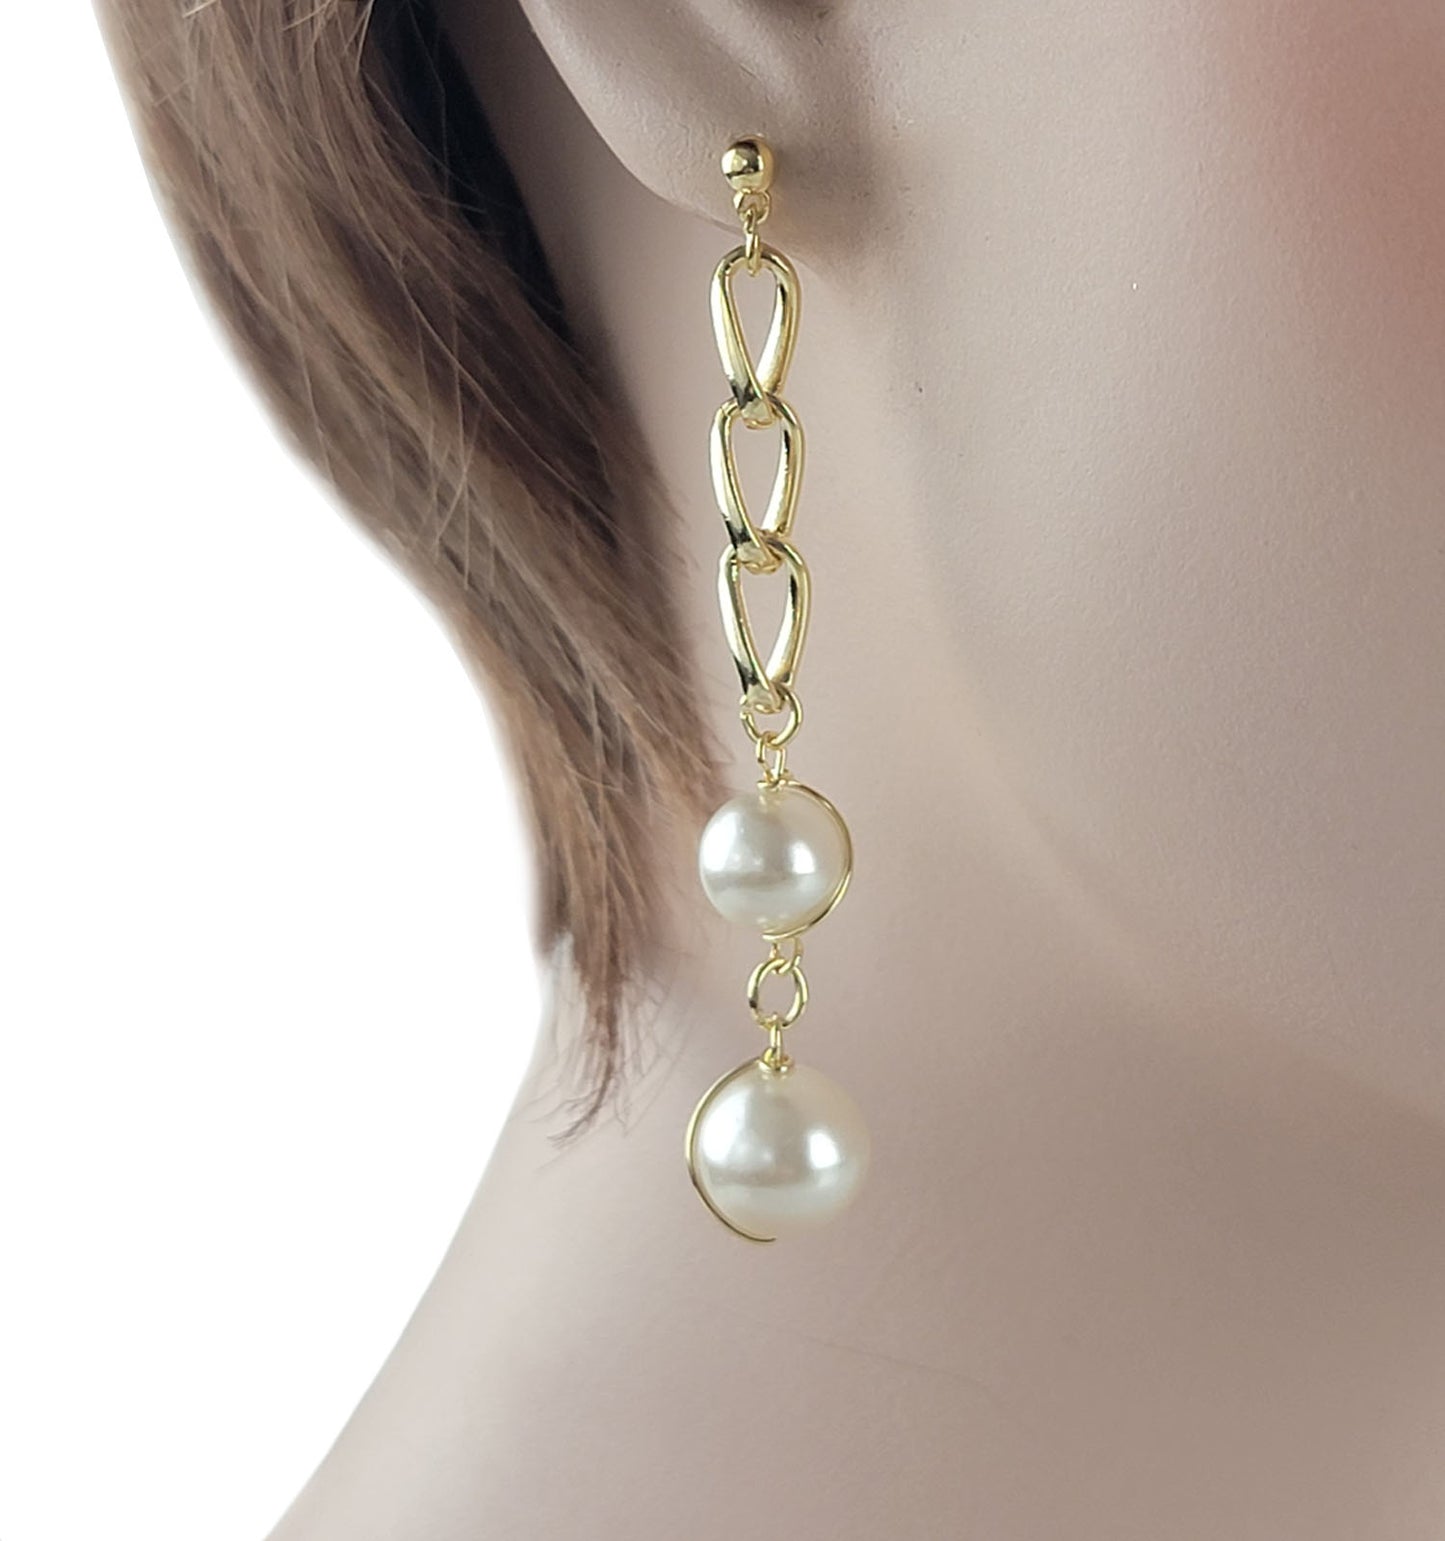 Gold Tone Chain & Faux Pearl Beaded Dangle Pierced Earrings 3" Drop